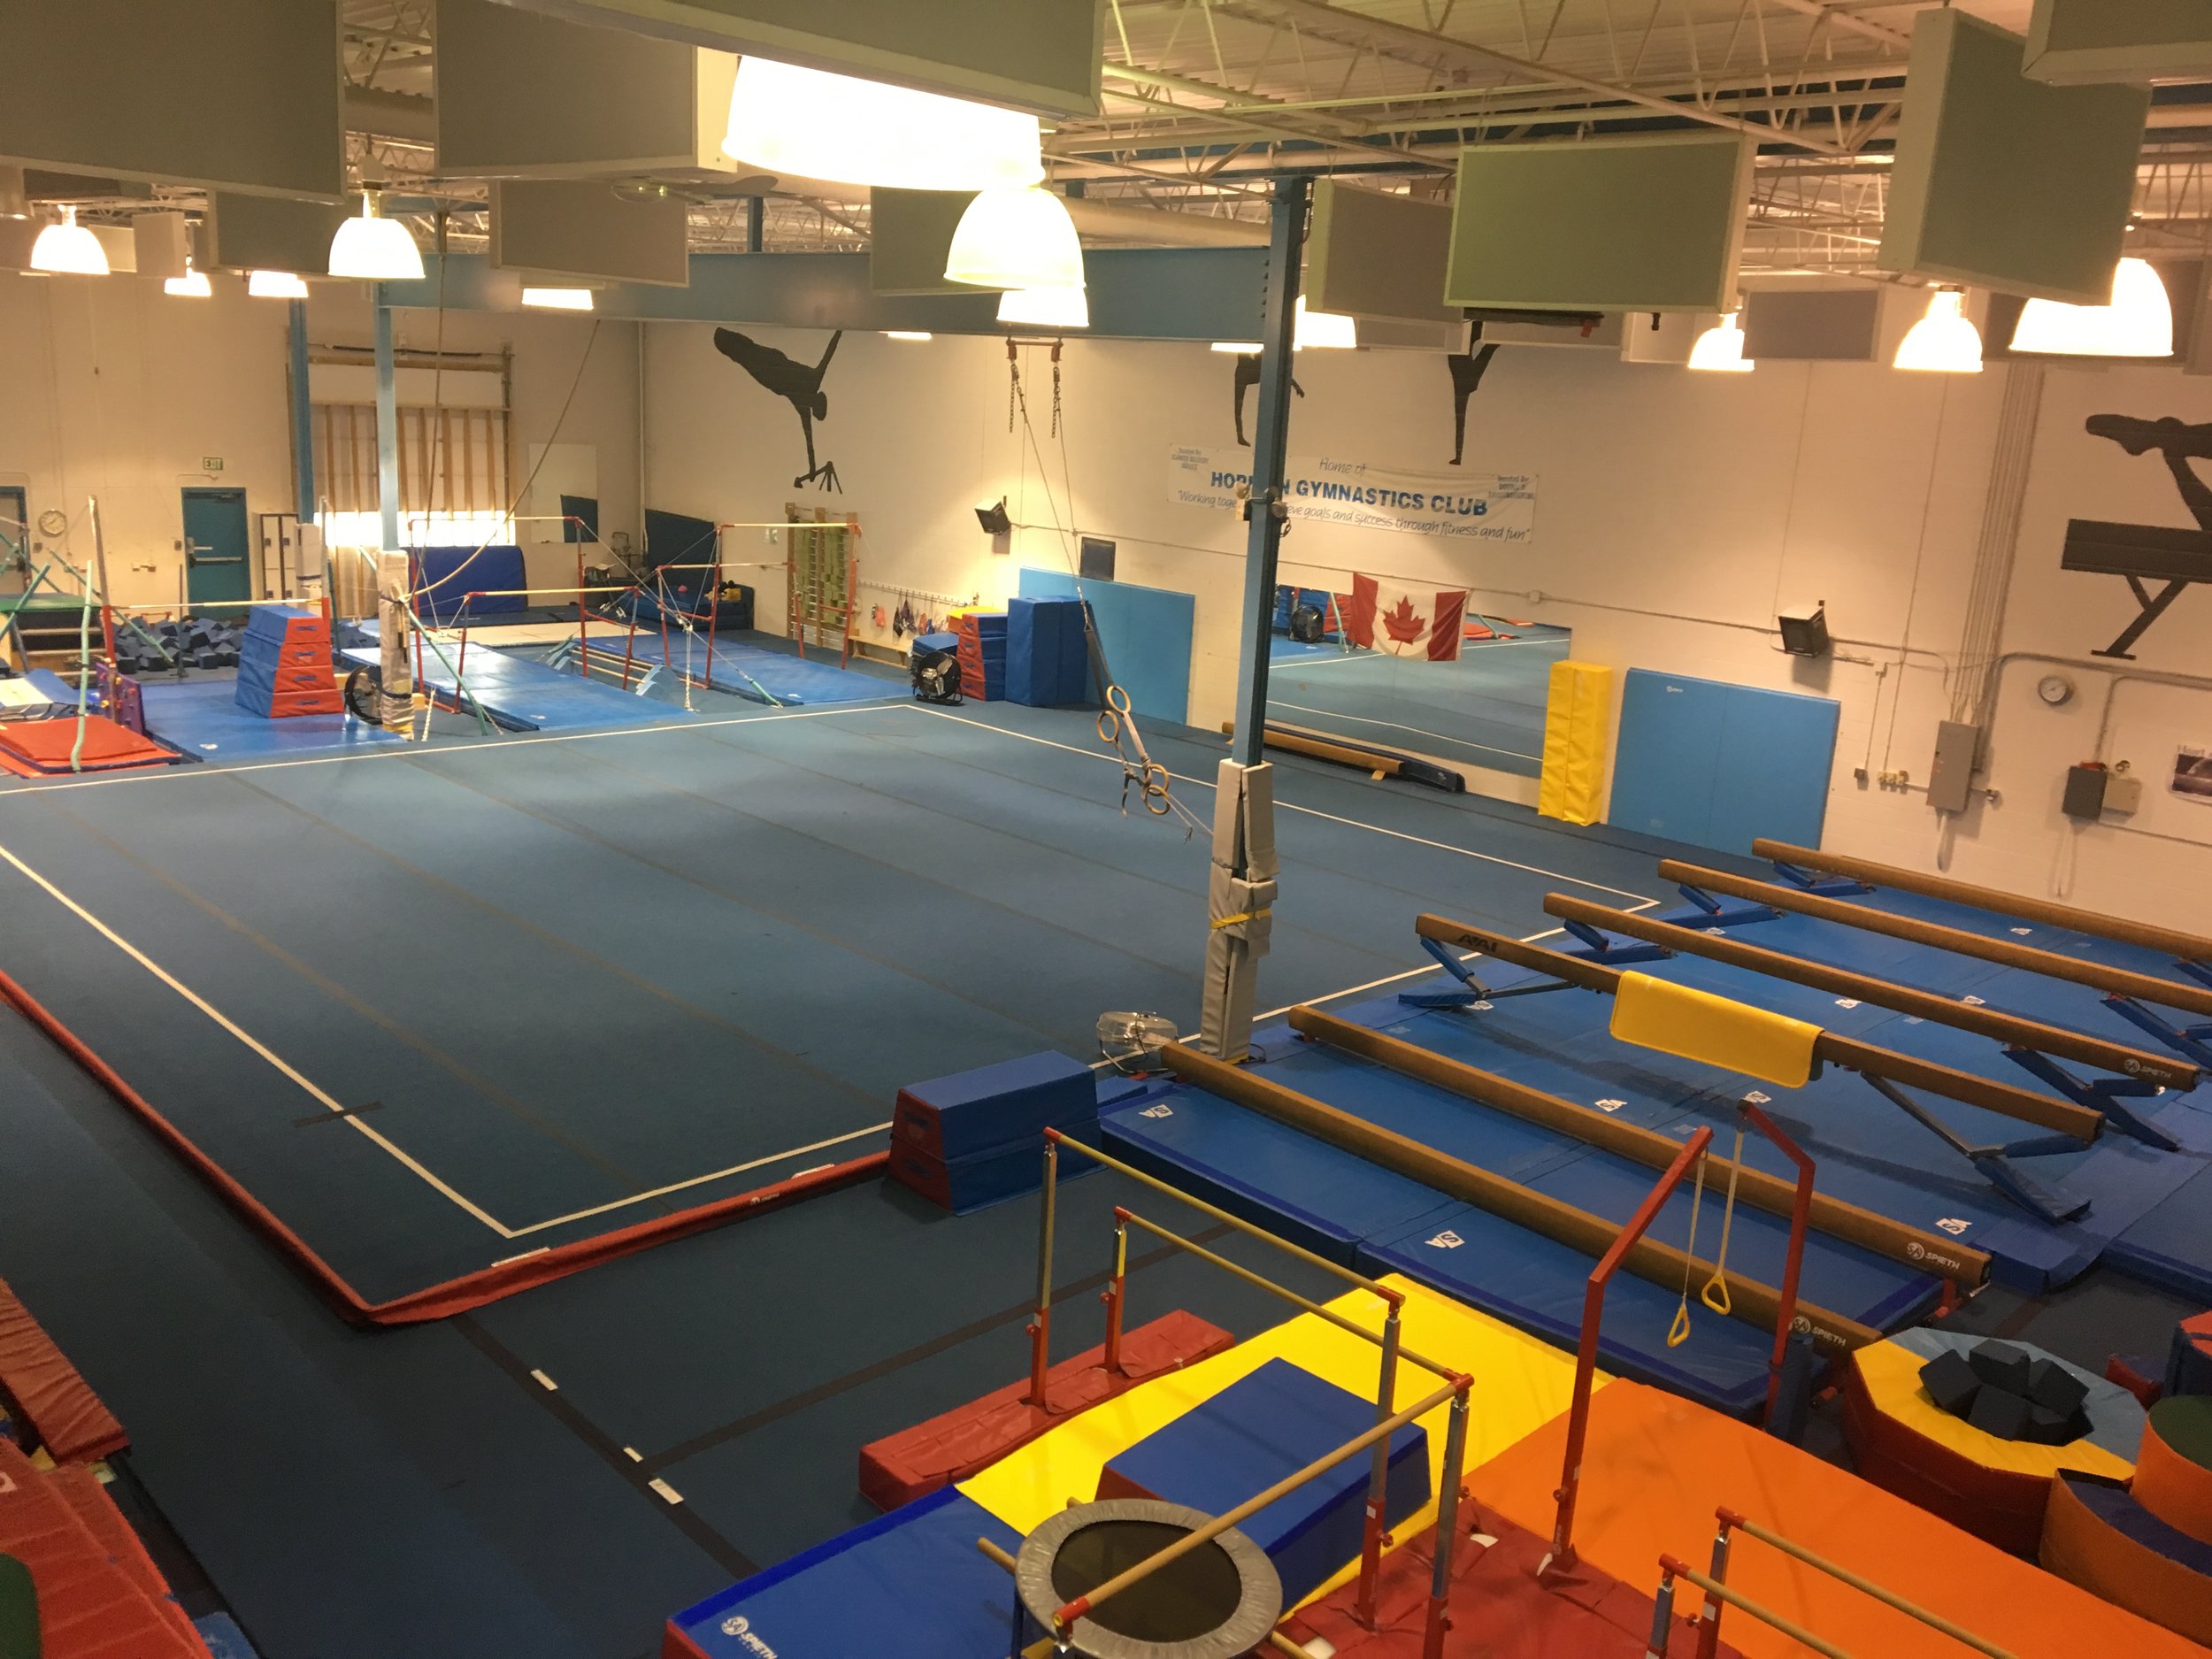 Children's Gymnastics Club - Horizon